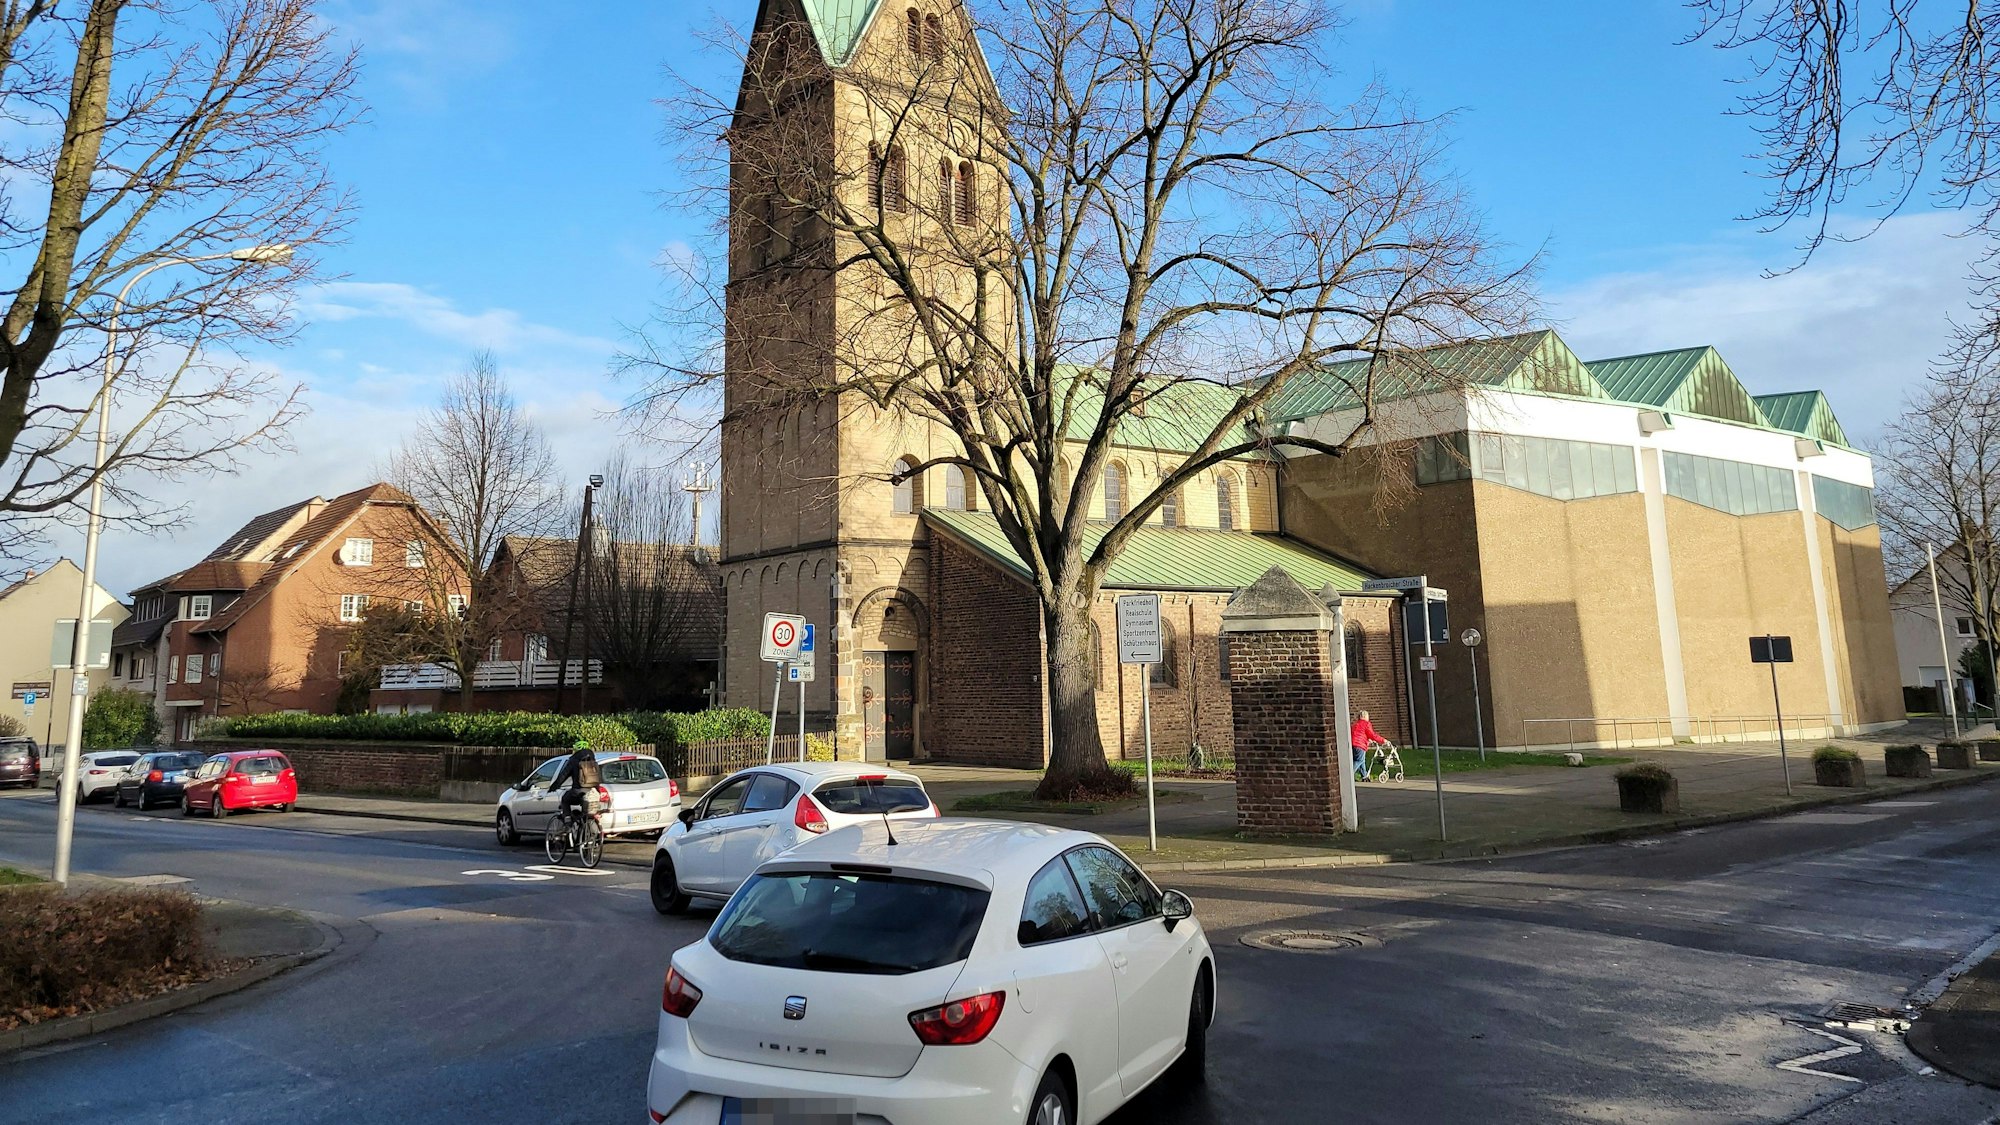 Zu sehen ist eine Kreuzung, mehrere nach links abbiegende Autos, eine Radfahrerin und im Hintergrund eine Kirche.